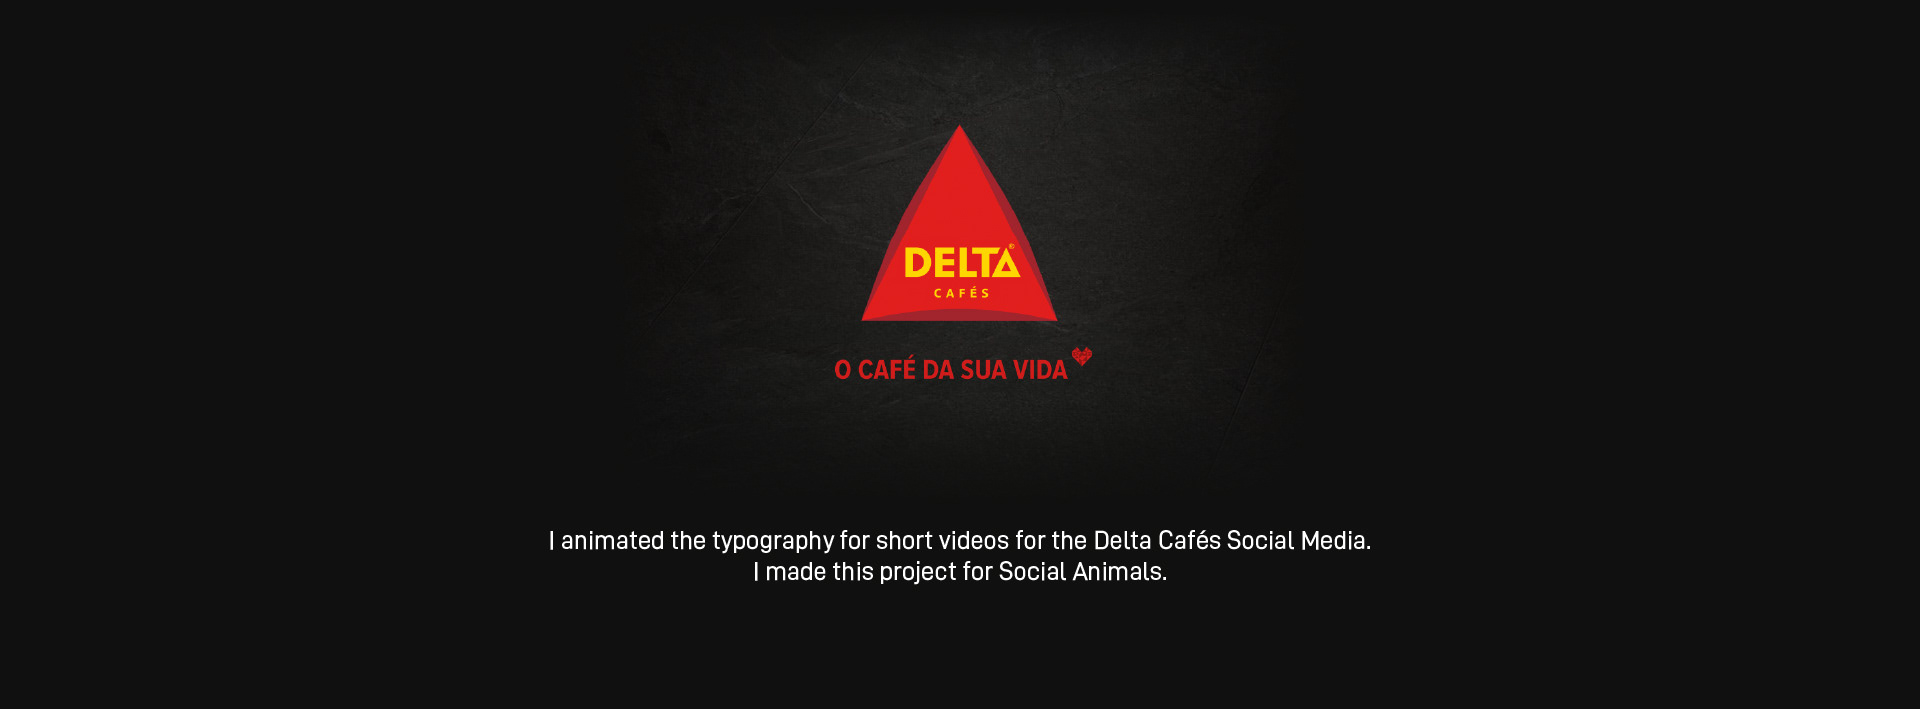 Delta Cafés 1